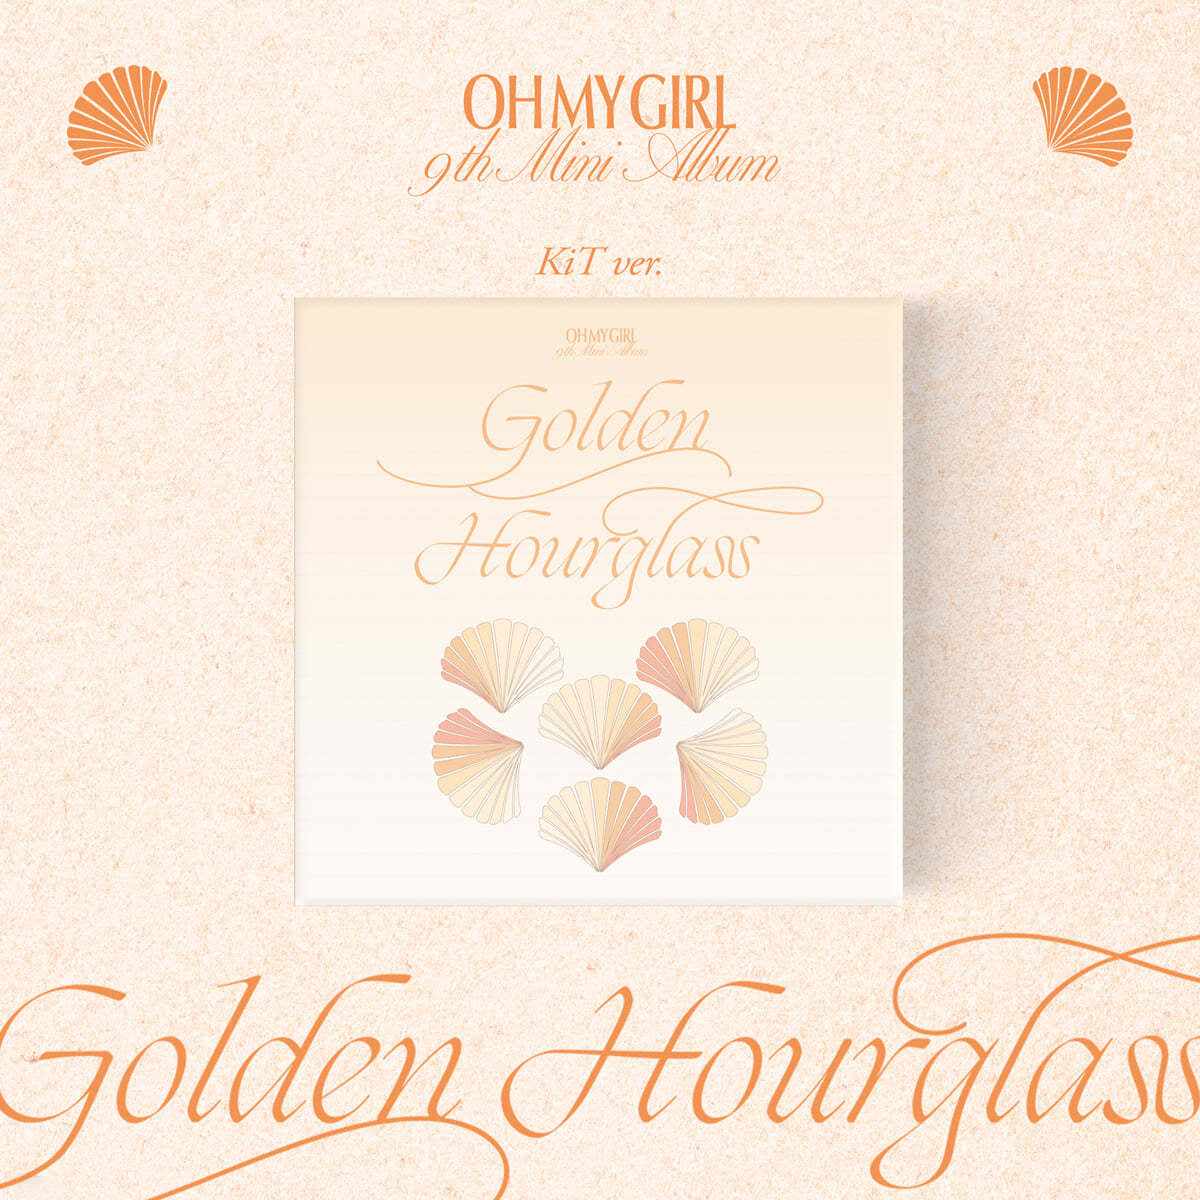 OH MY GIRL - Golden Hourglass (KiT ALBUM ver.)